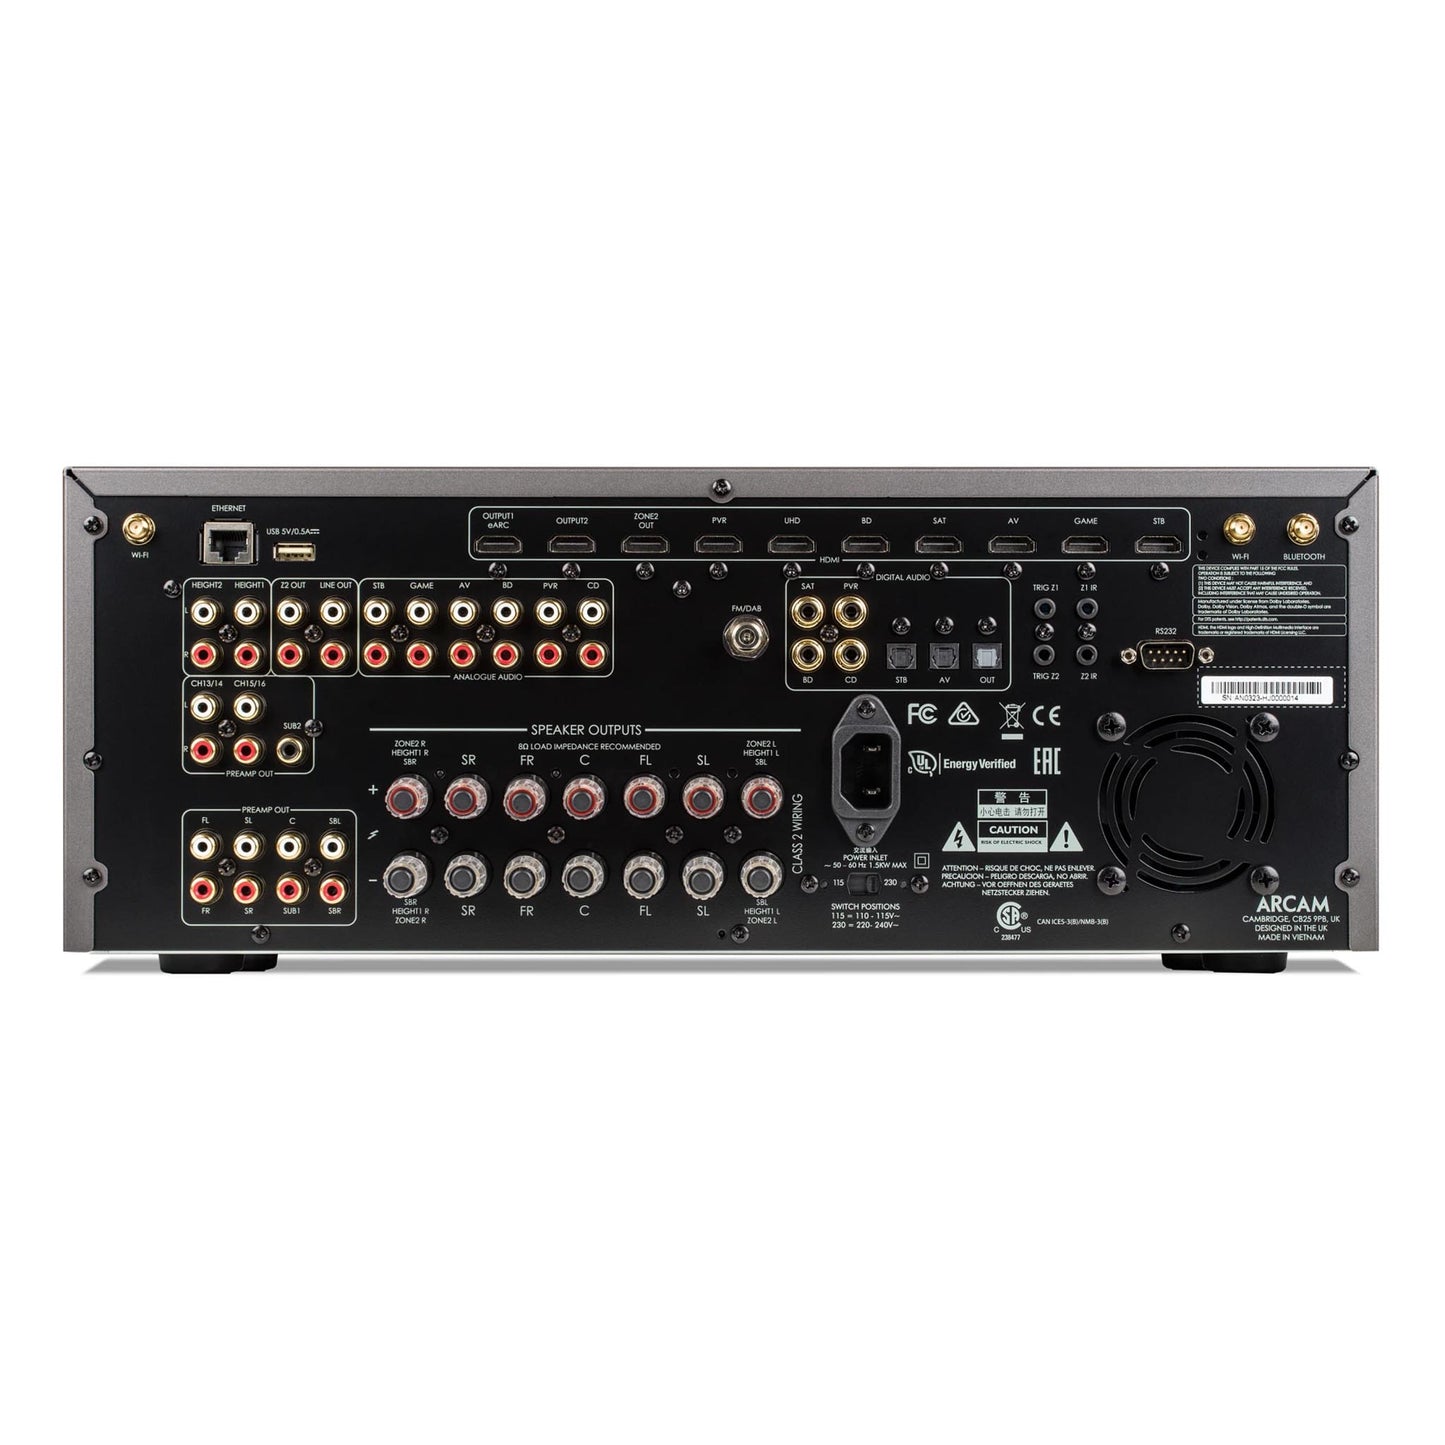 Arcam AVR21 15.2 Pre-Amplifier / 7 Amplifier Channel Class AB AV Receiver